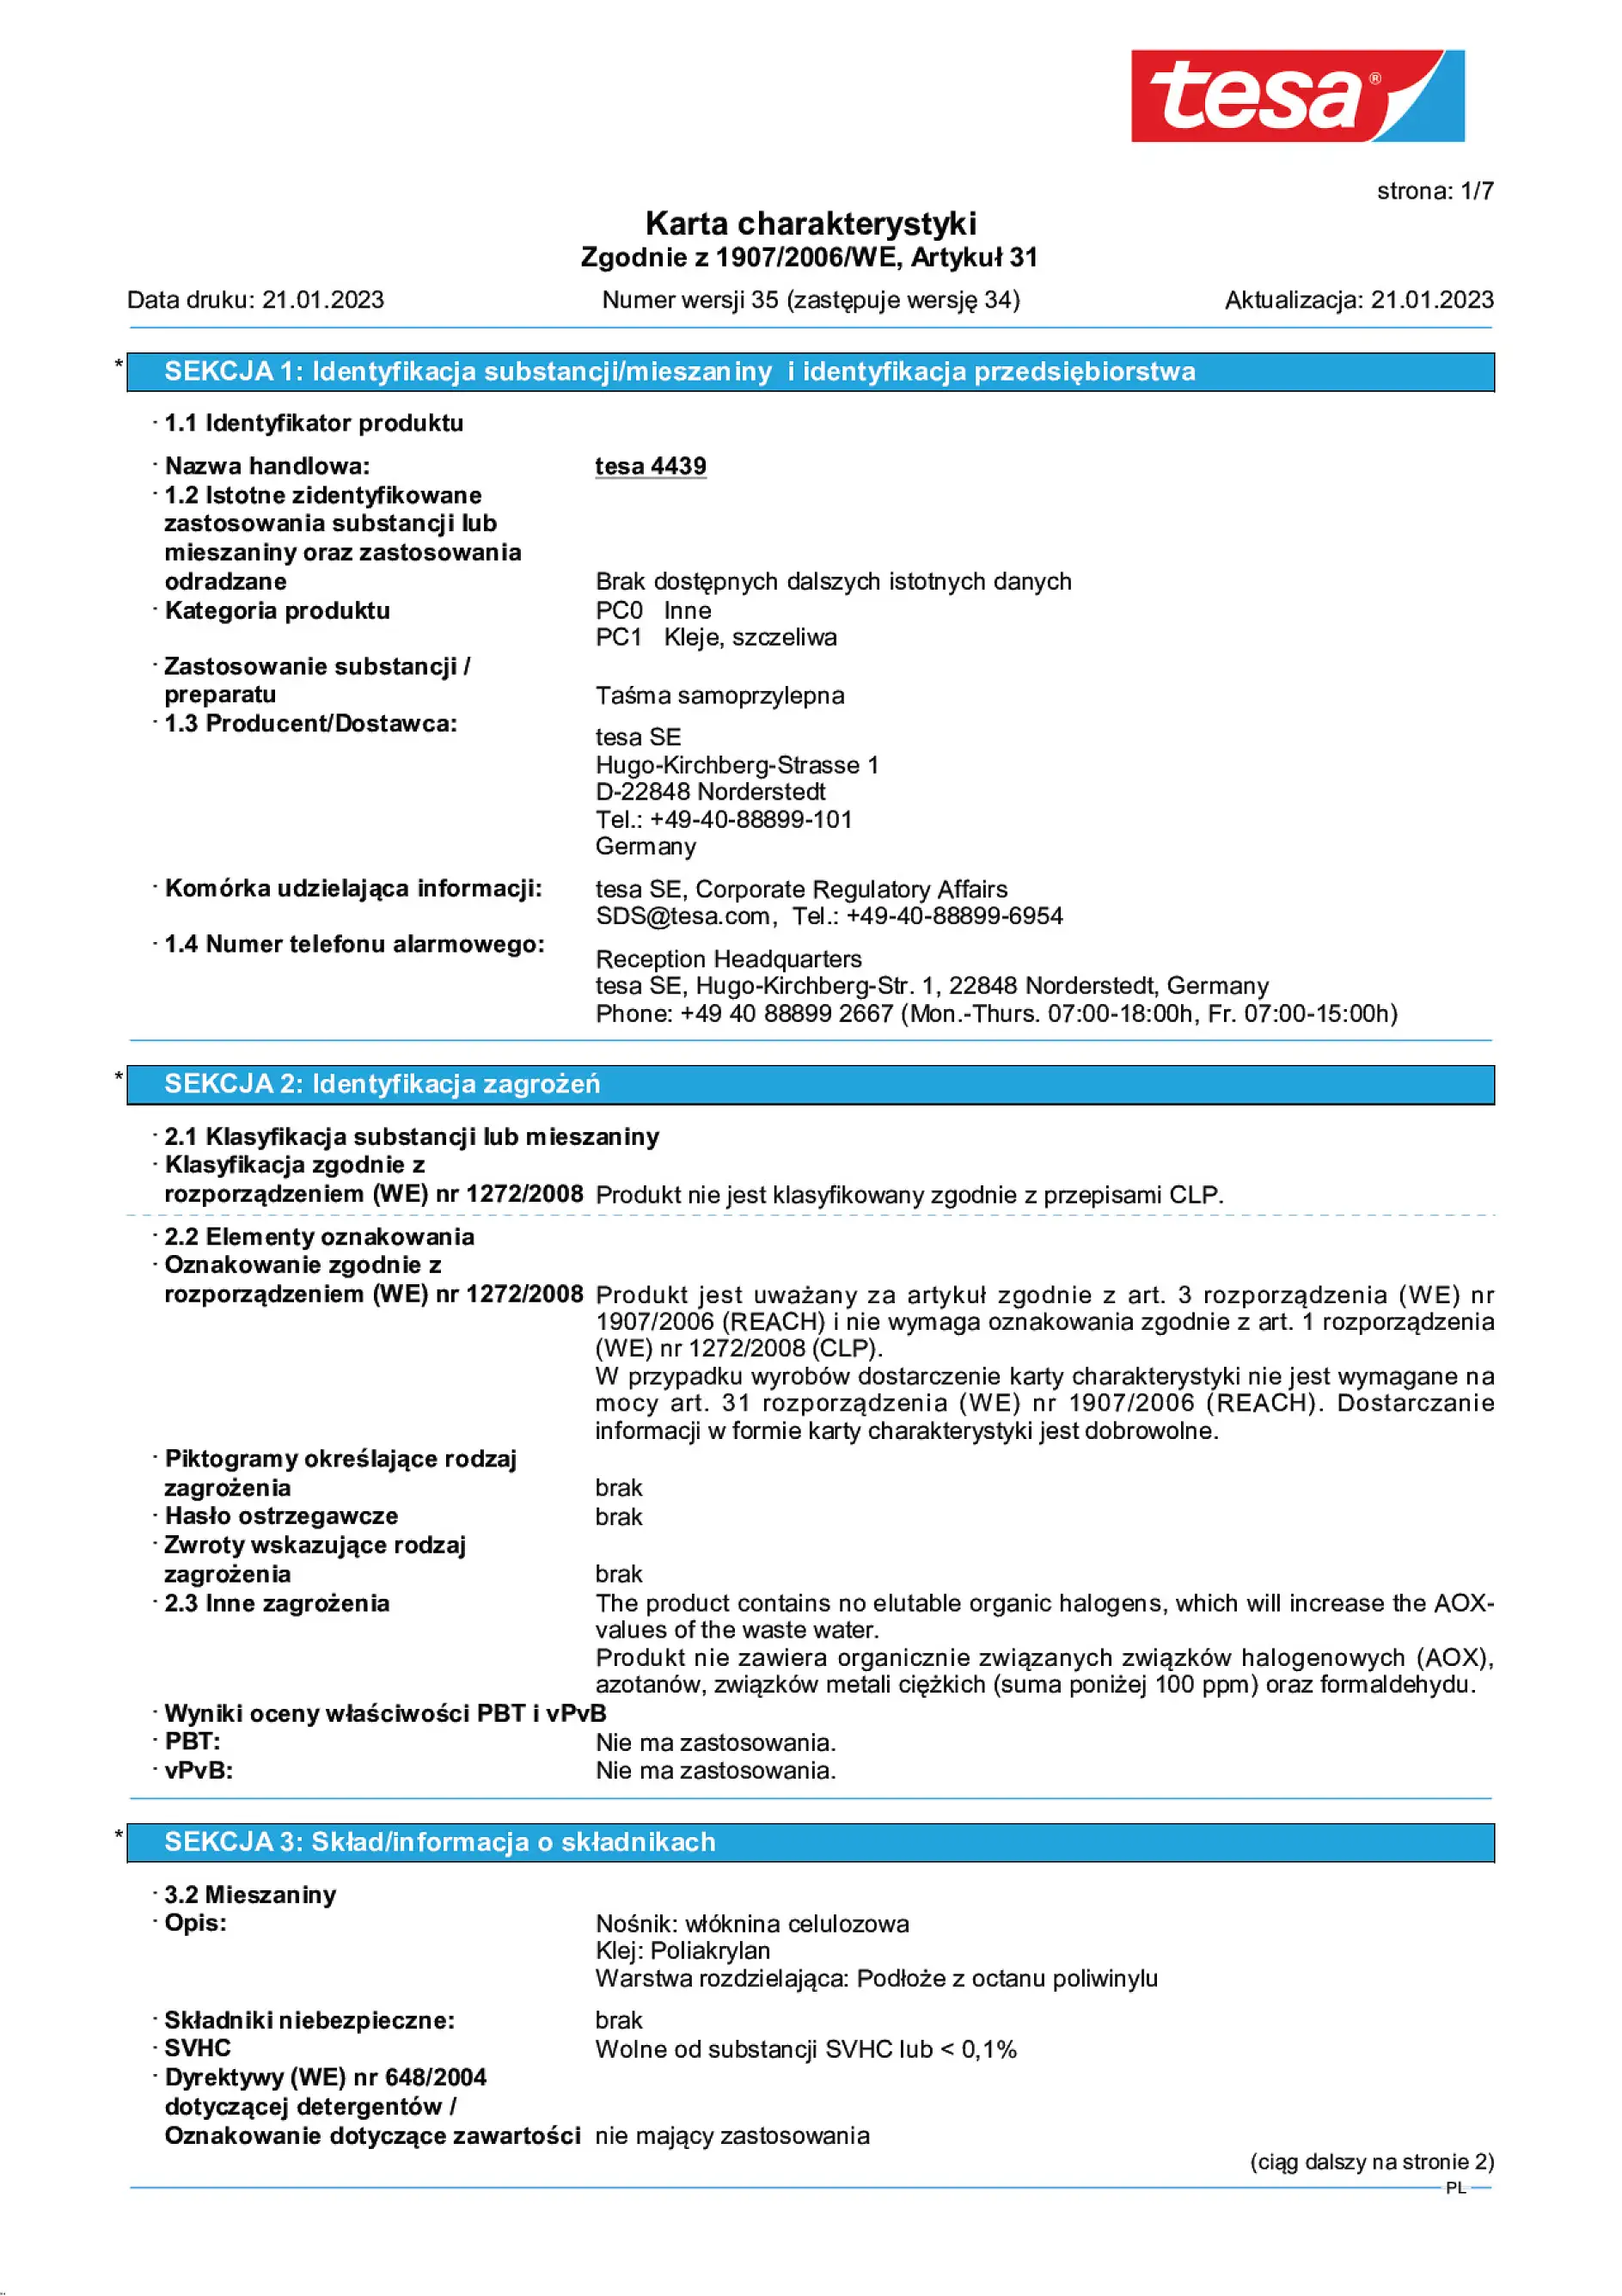 Safety data sheet_tesa® Professional 04439_pl-PL_v35